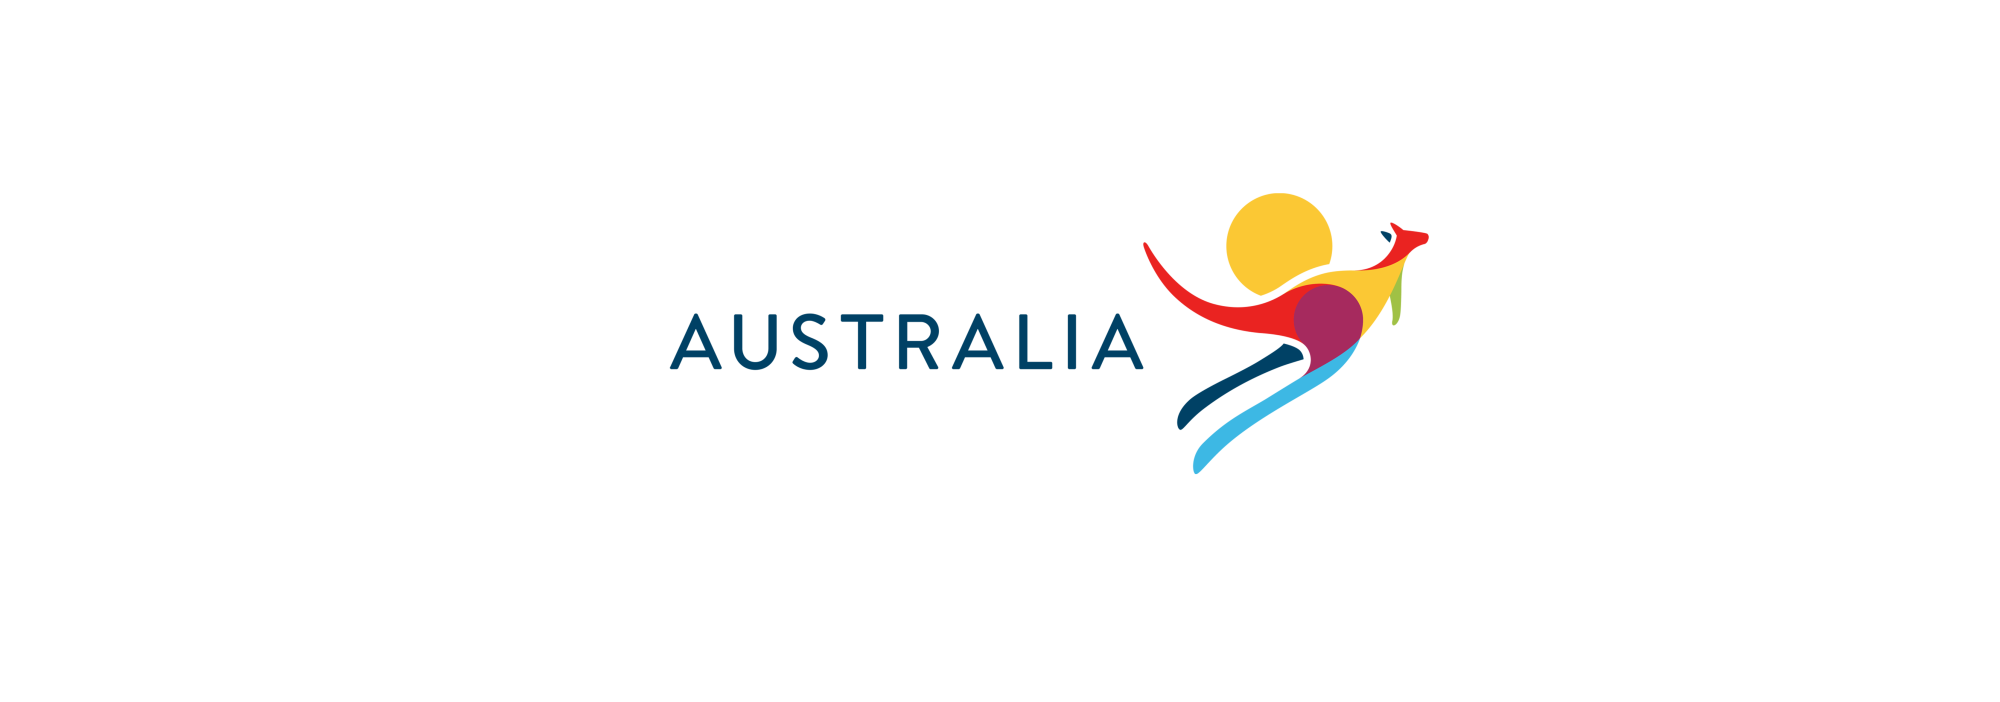 tourism australia logo